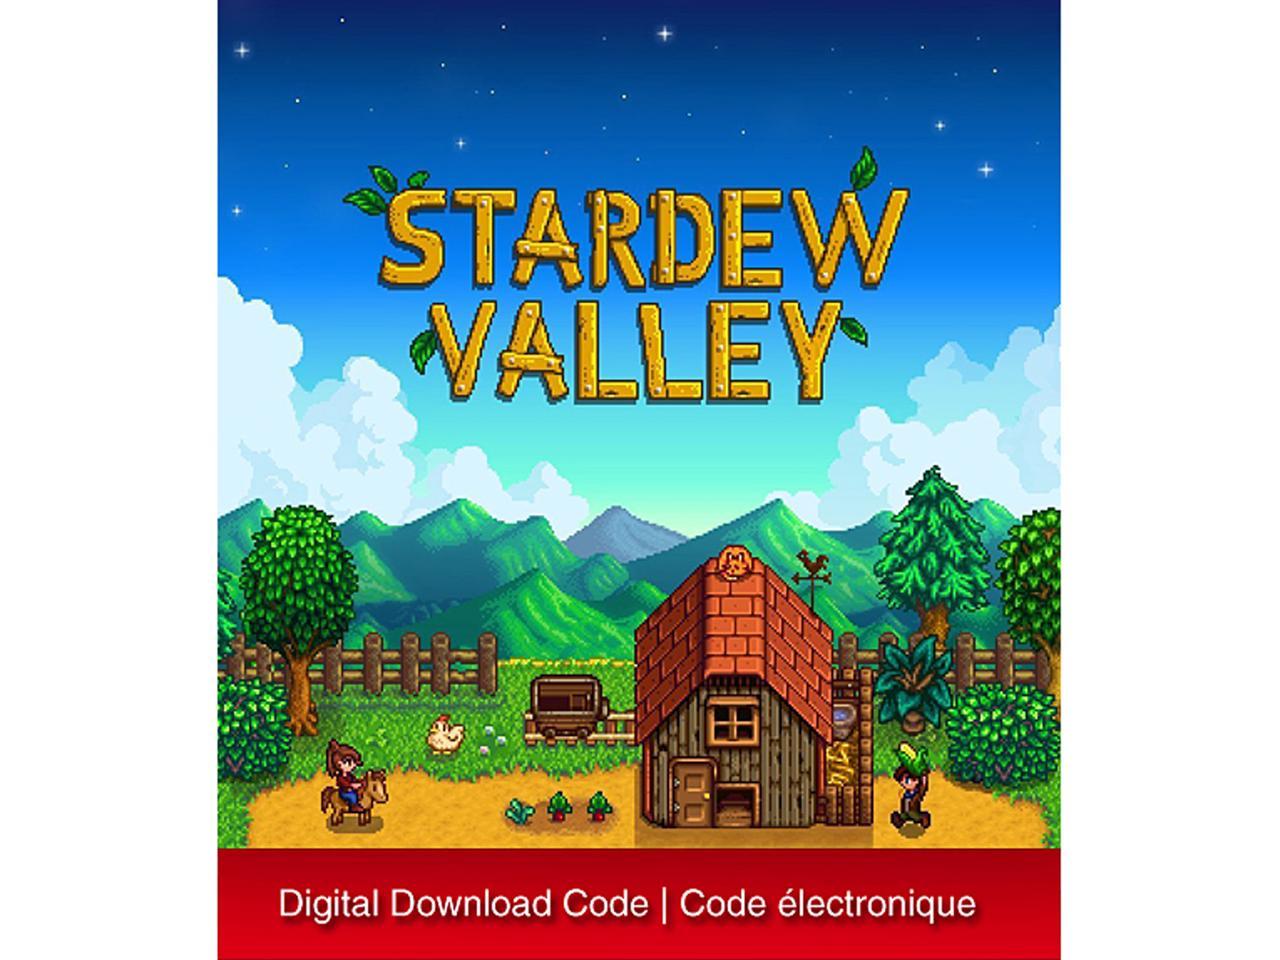 Stardew valley 1.6 nintendo switch